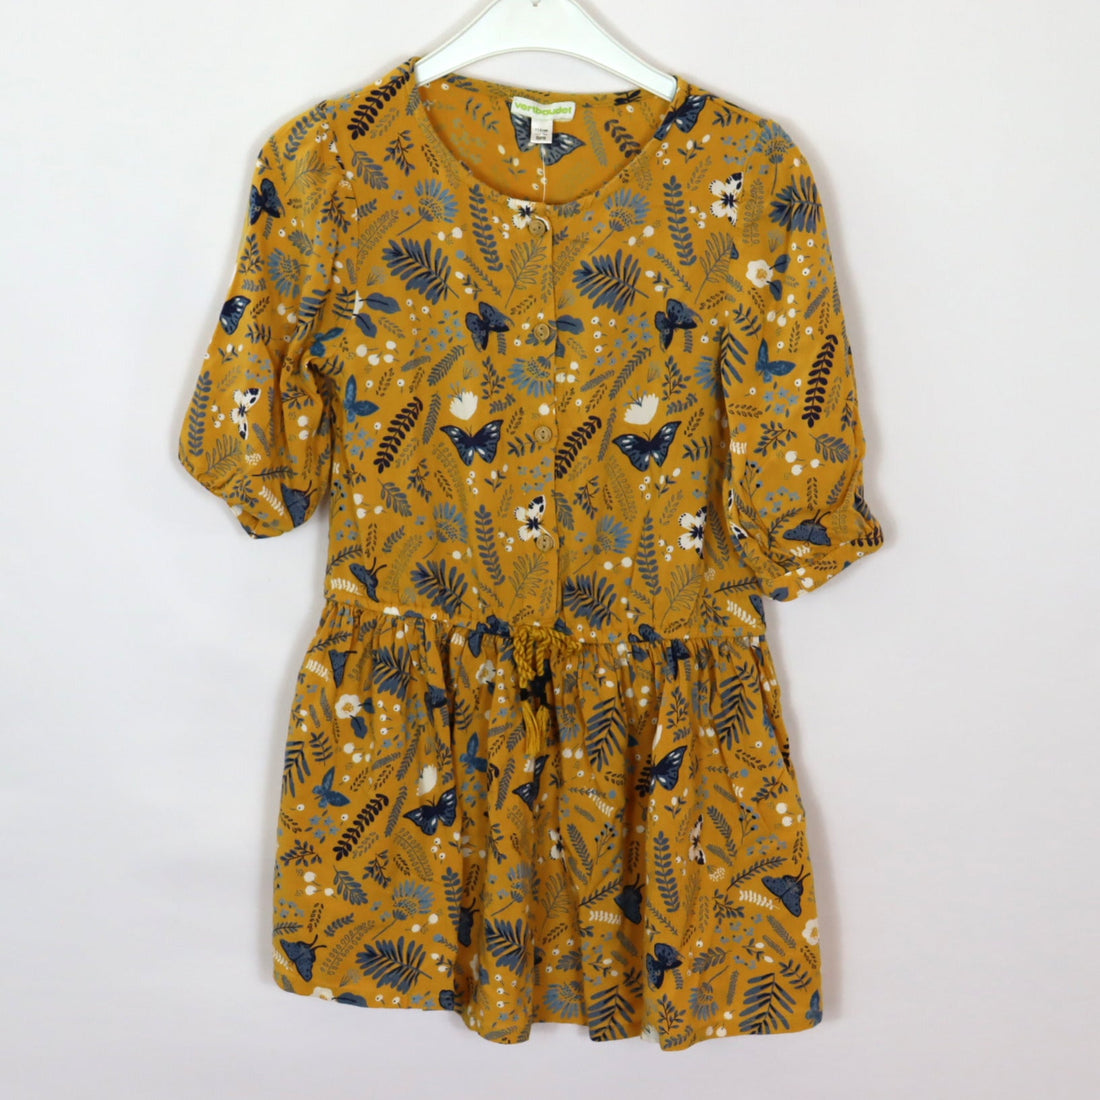 Kleid - Vertbaudet - 116 - gelb - Schmetterling - sehr guter Zustand